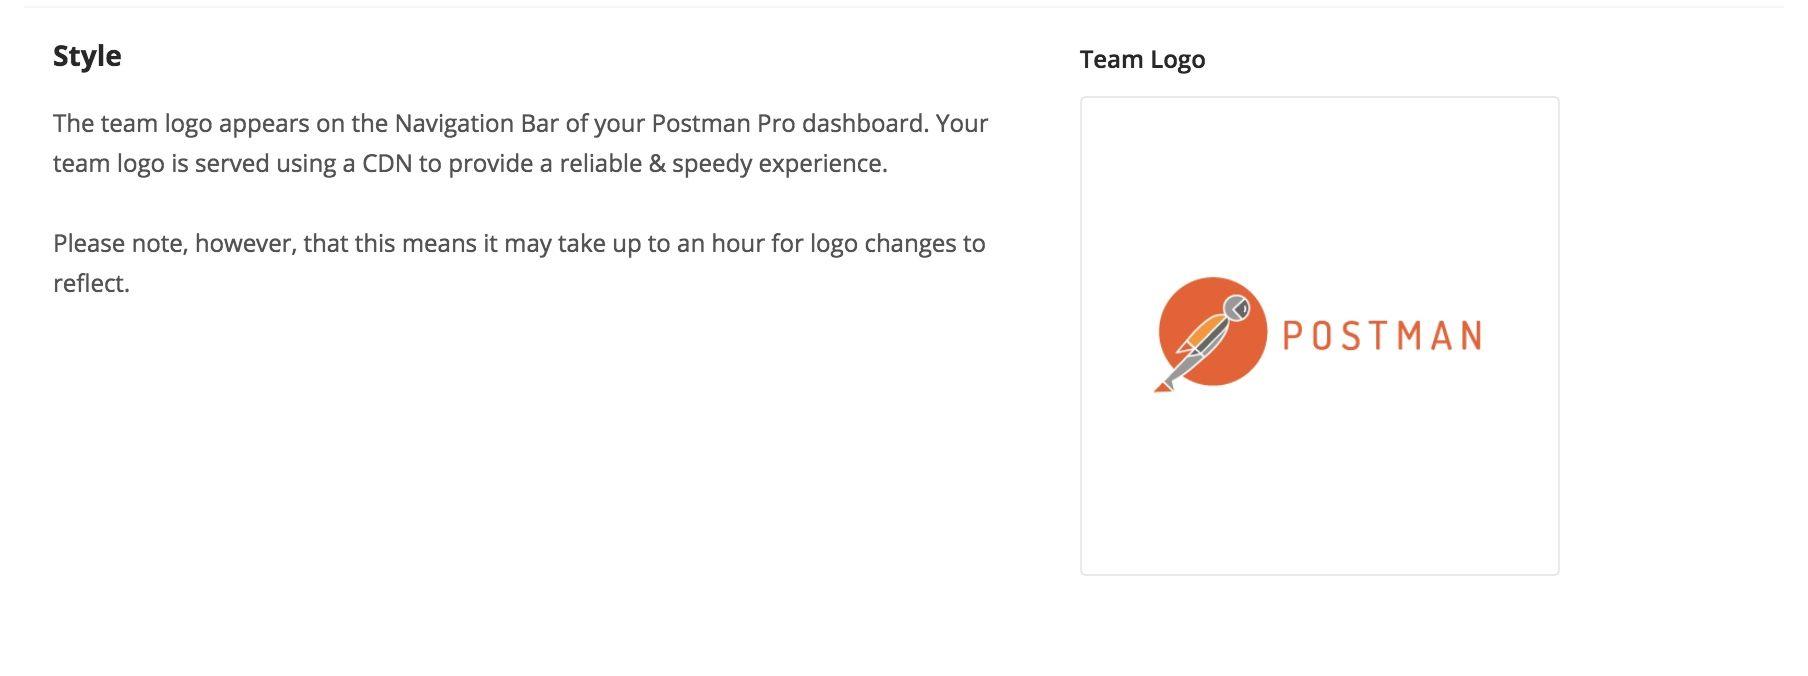 Postman Logo - Team Settings. Postman Learning Center